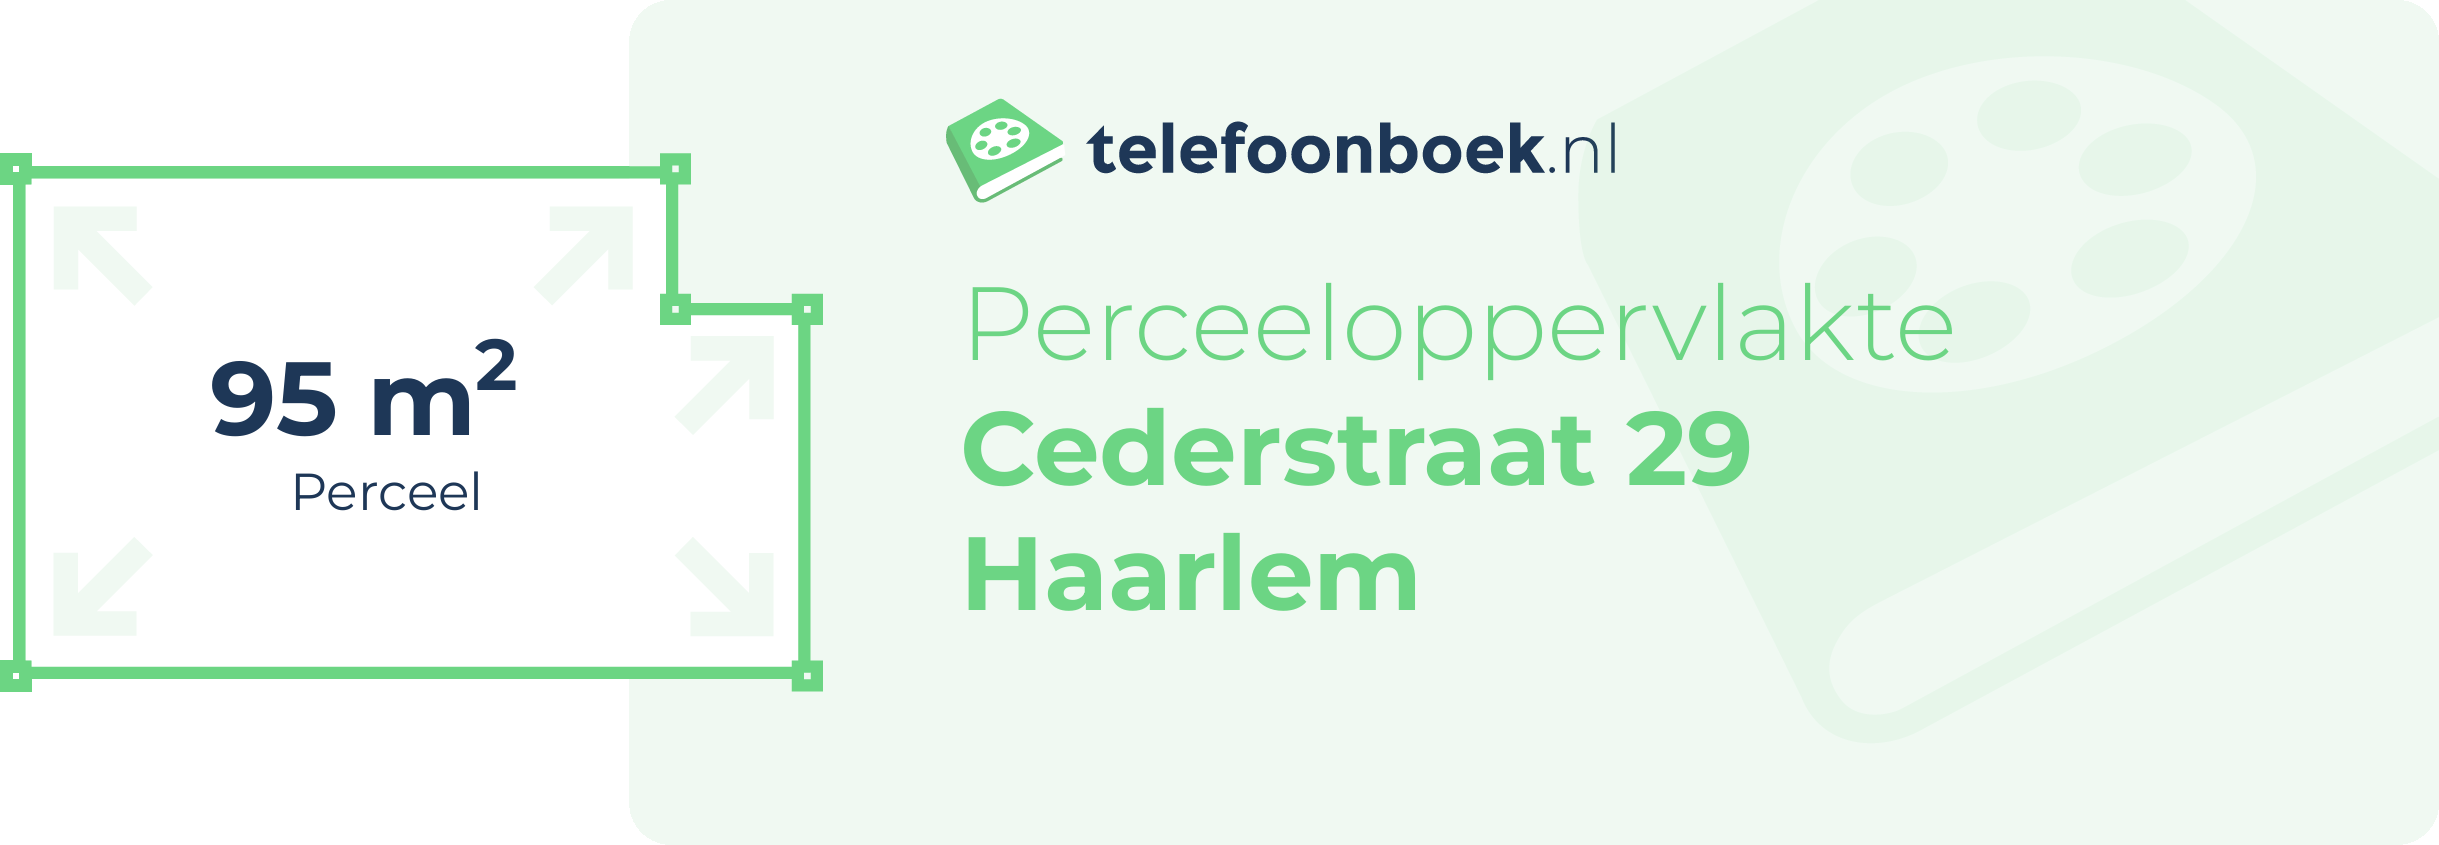 Perceeloppervlakte Cederstraat 29 Haarlem